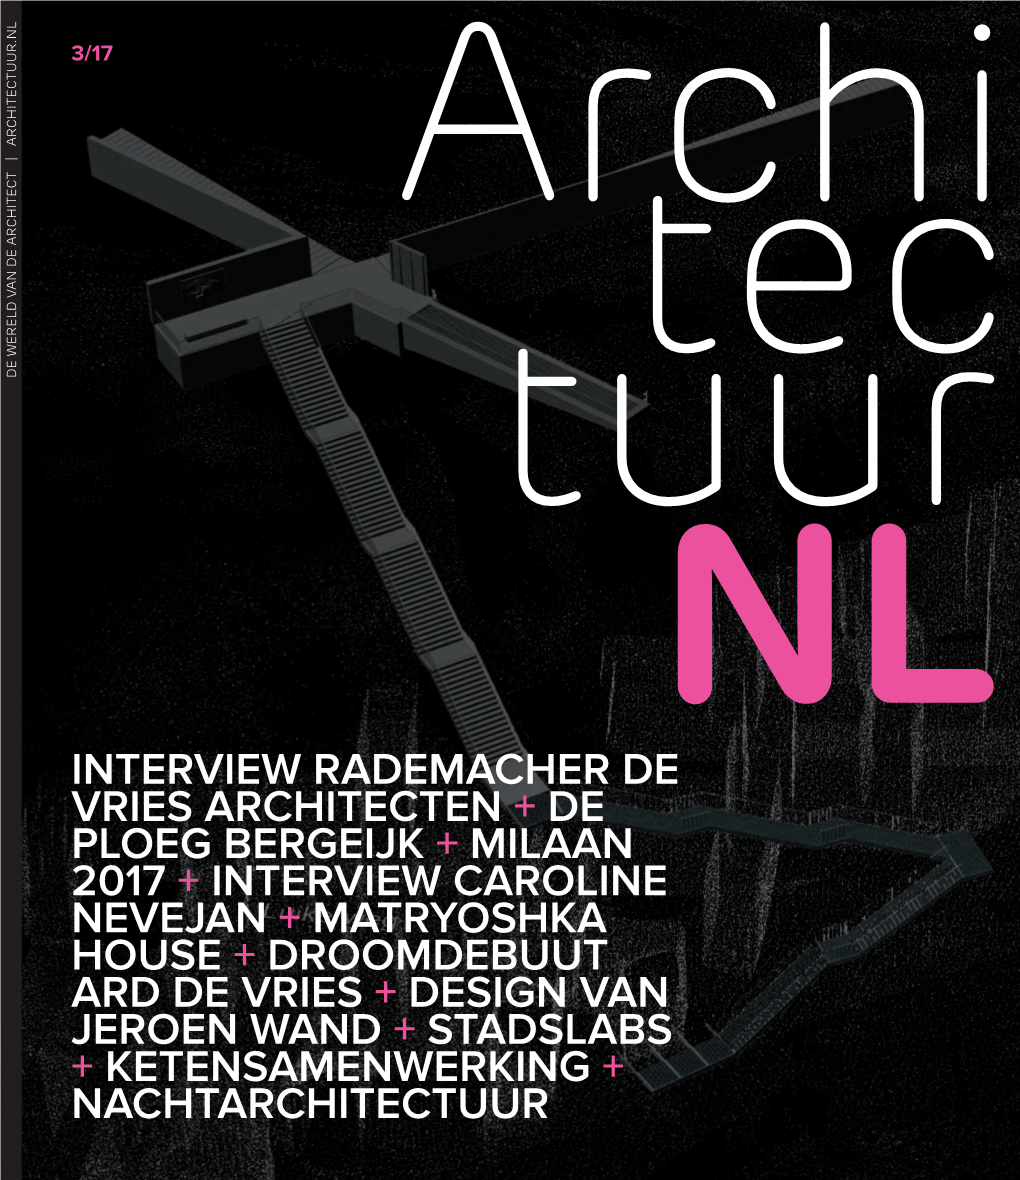 Interview Rademacher De Vries Architecten + De